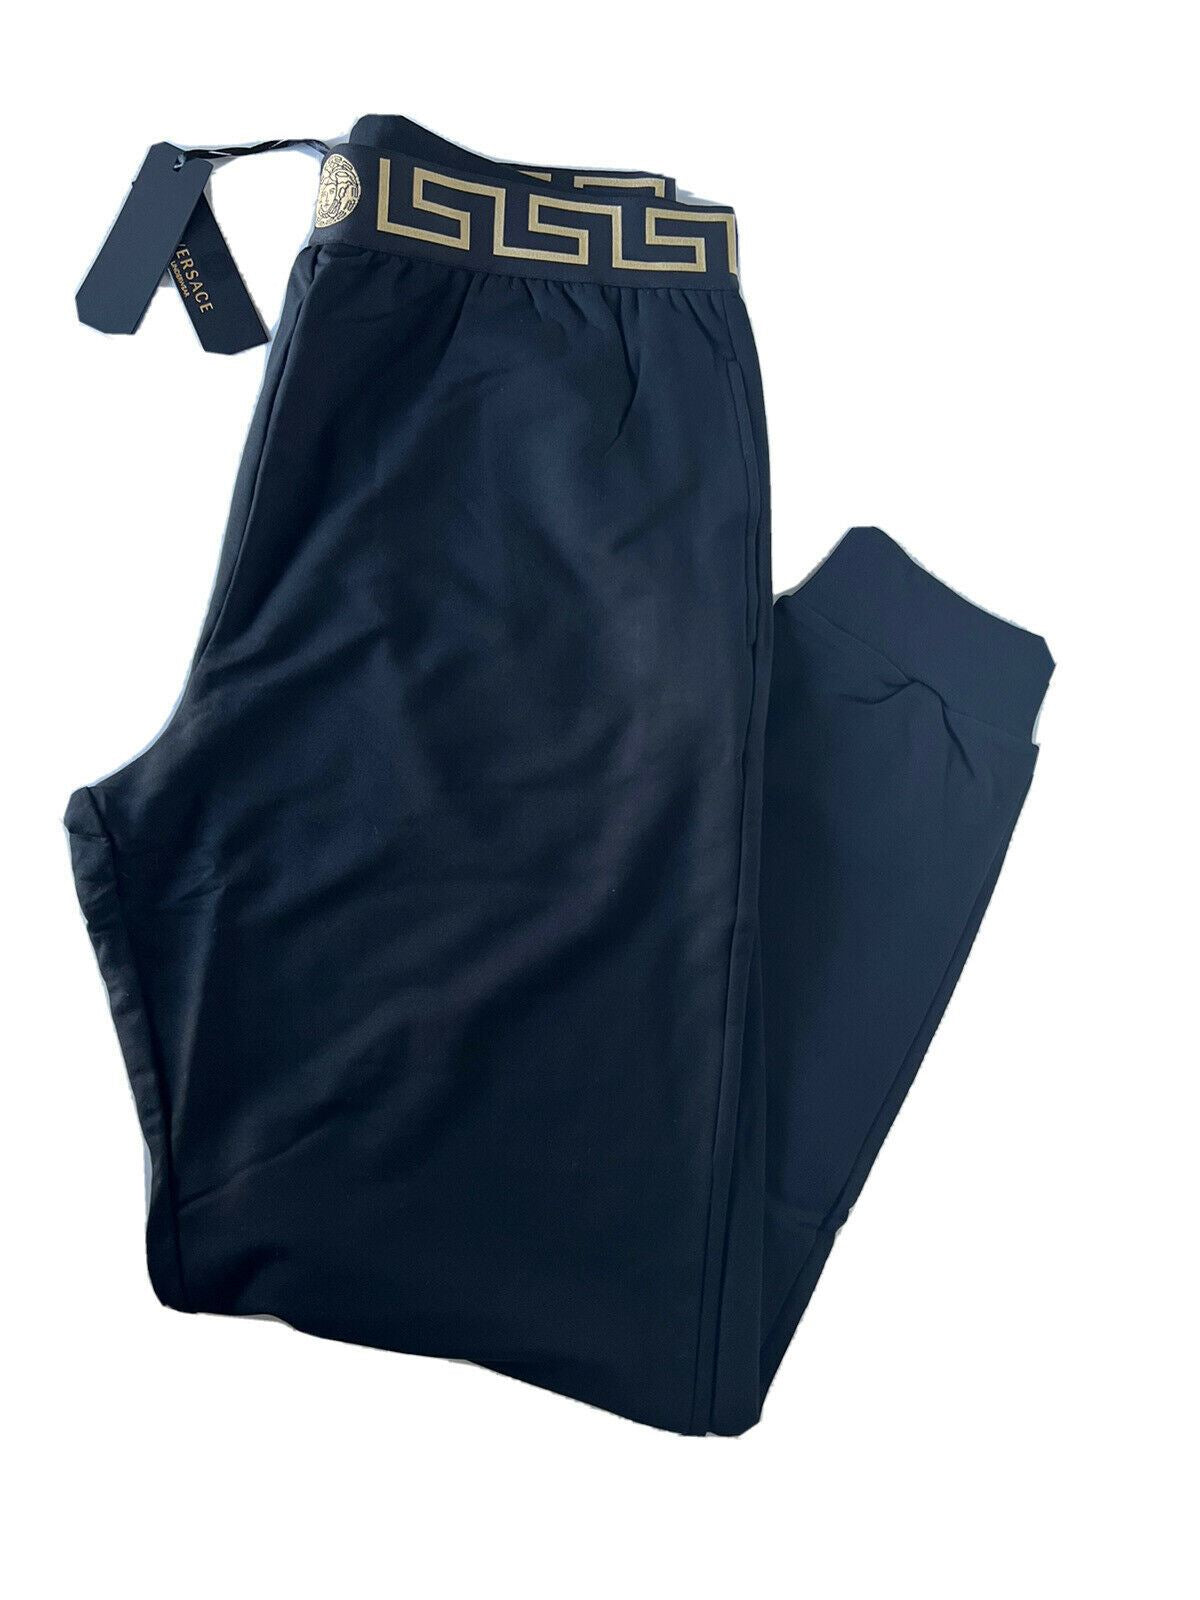 Мужские спортивные брюки NWT Versace черные с каймой Medusa Greca 7 (XL) Италия 15011 